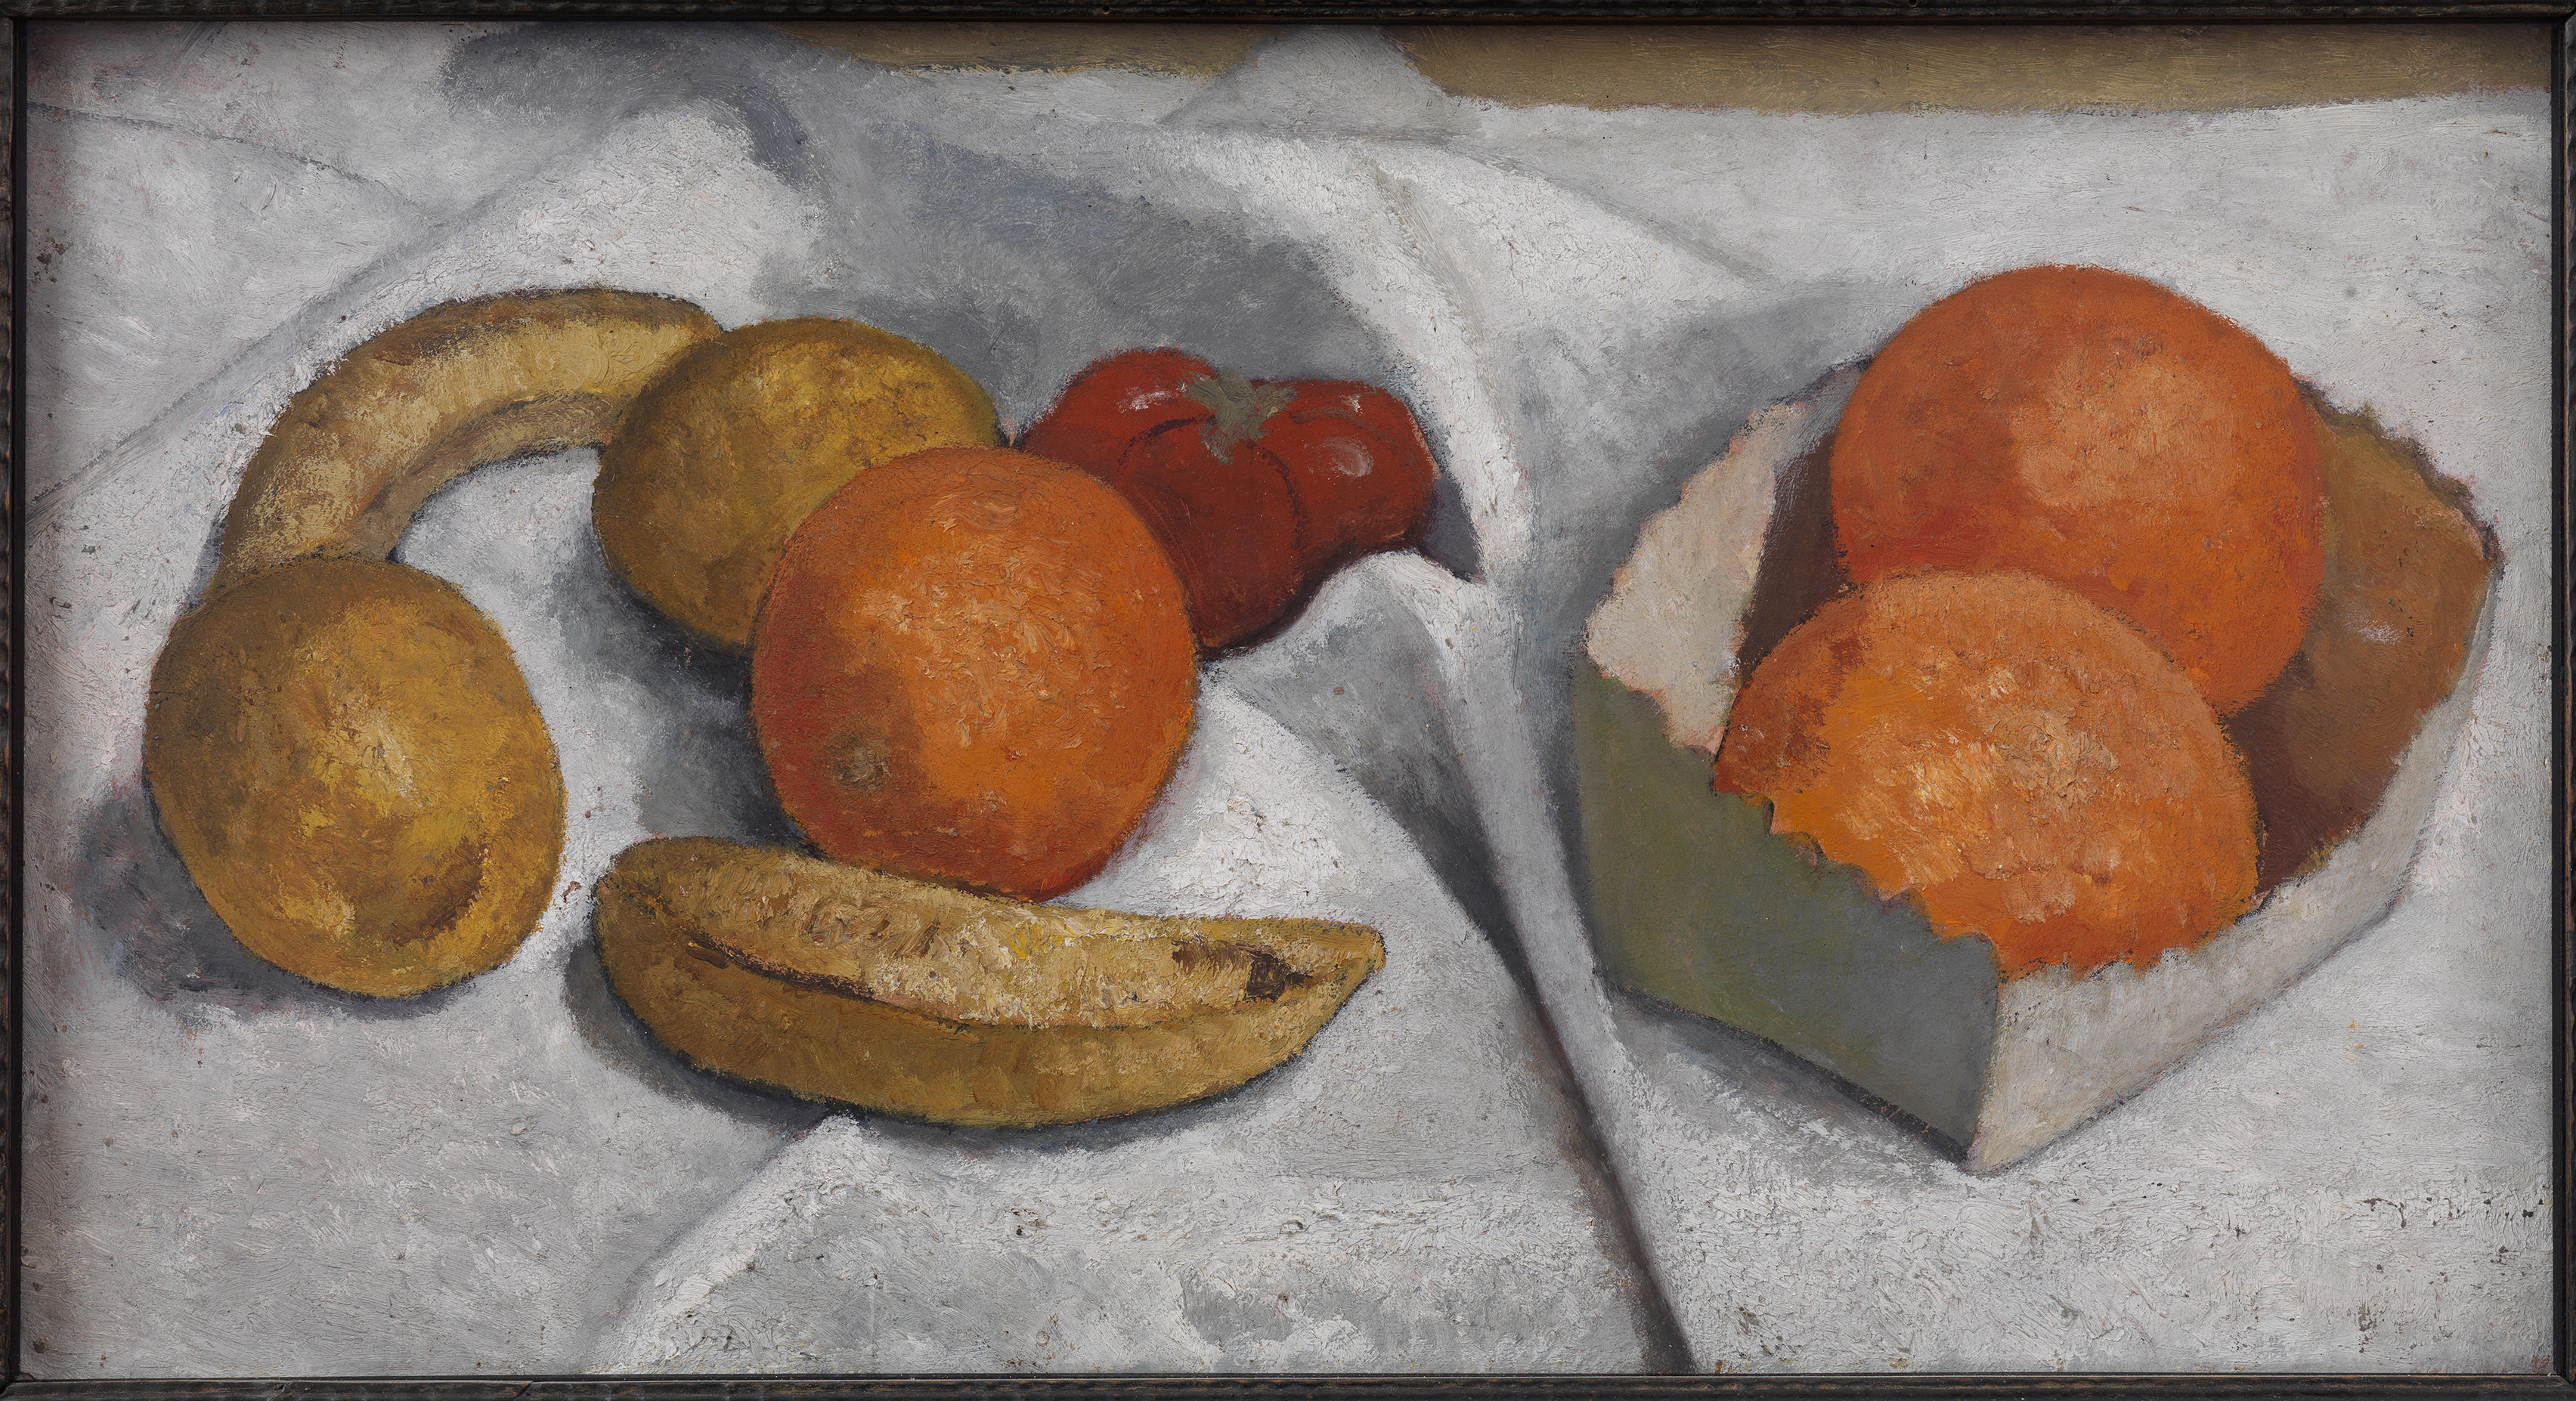 La nature morte avec des oranges, bananes, citrons et tomates by Paula Modersohn-Becker - 1906 - 28.2 x 52.2 cm 